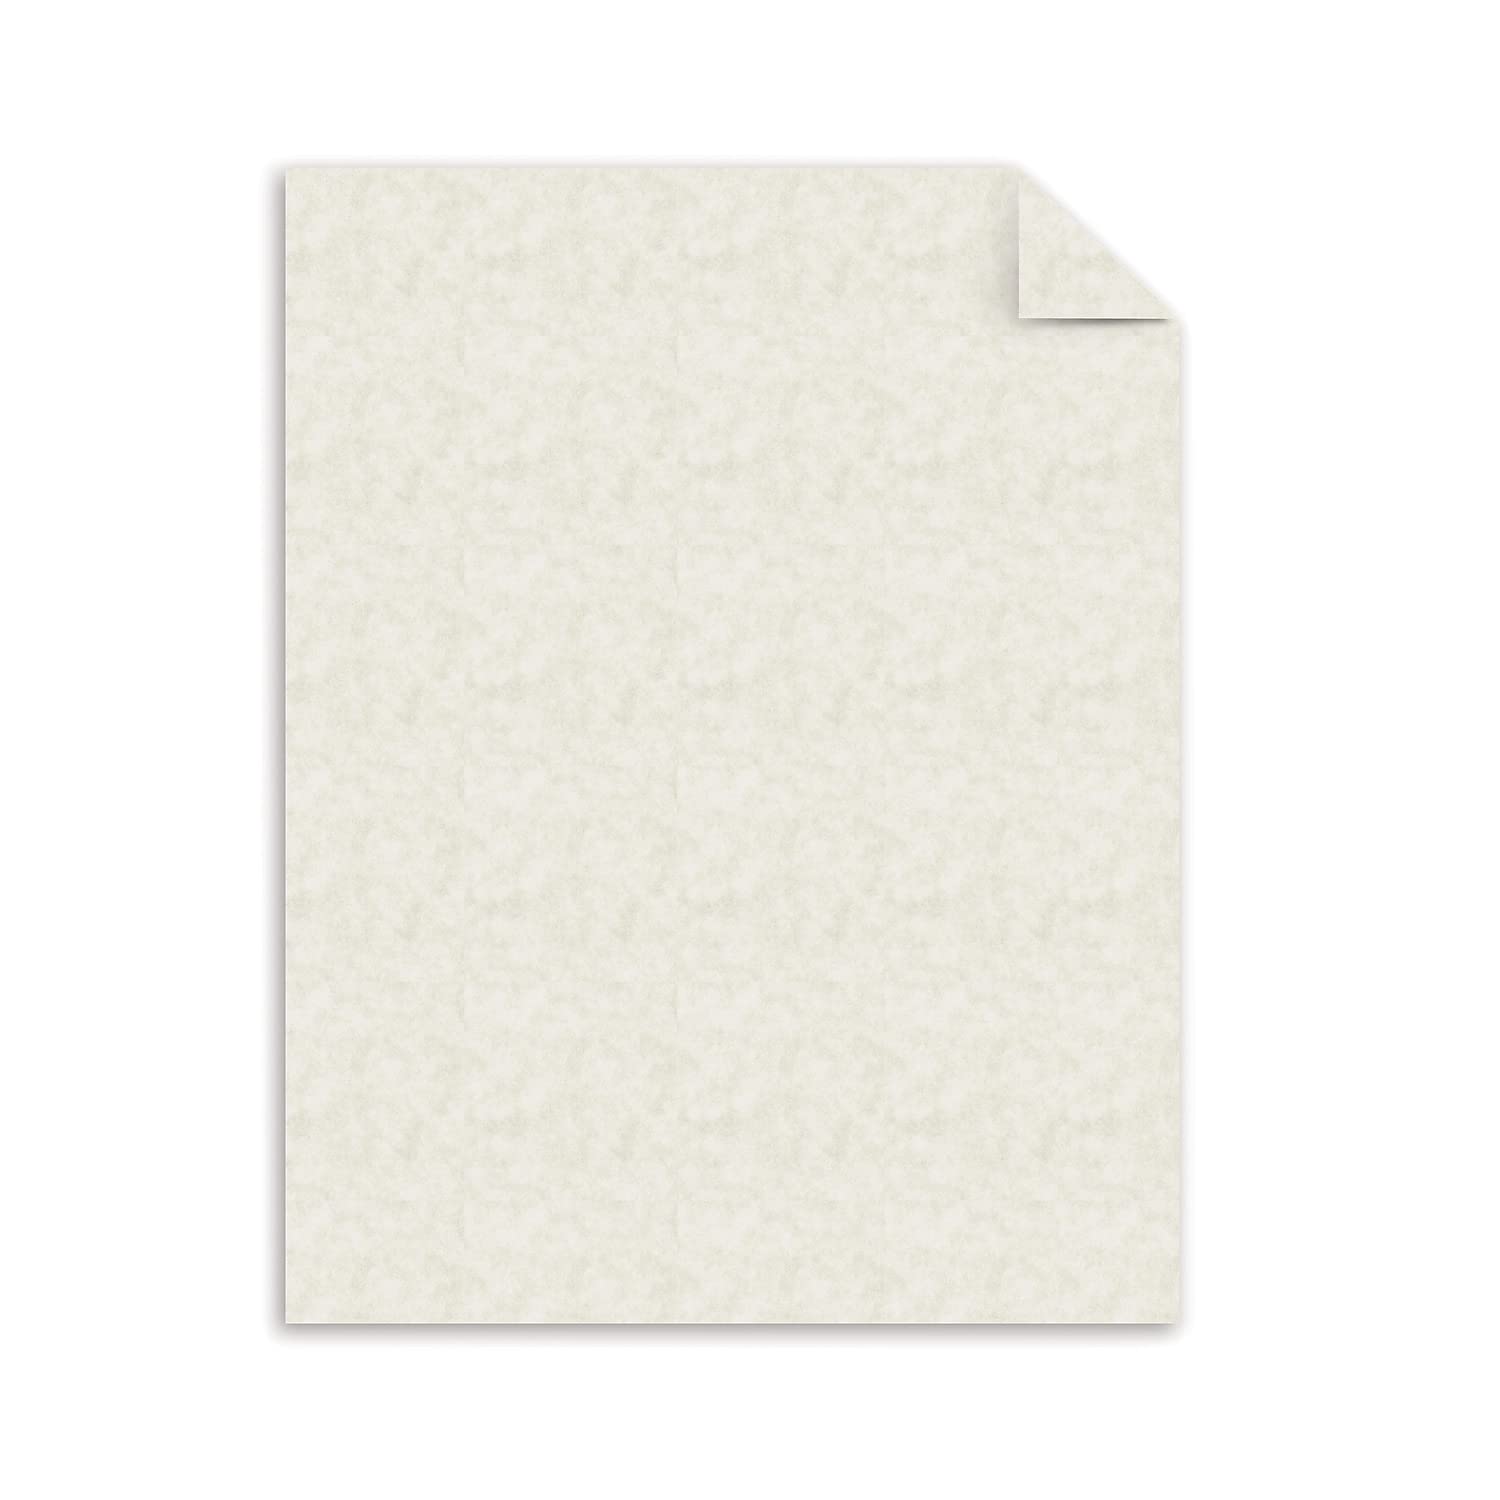 Southworth 984C Parchment Specialty Paper Ivory 24 lb. 8 1/2 x 11 500/Box (SOU984C)